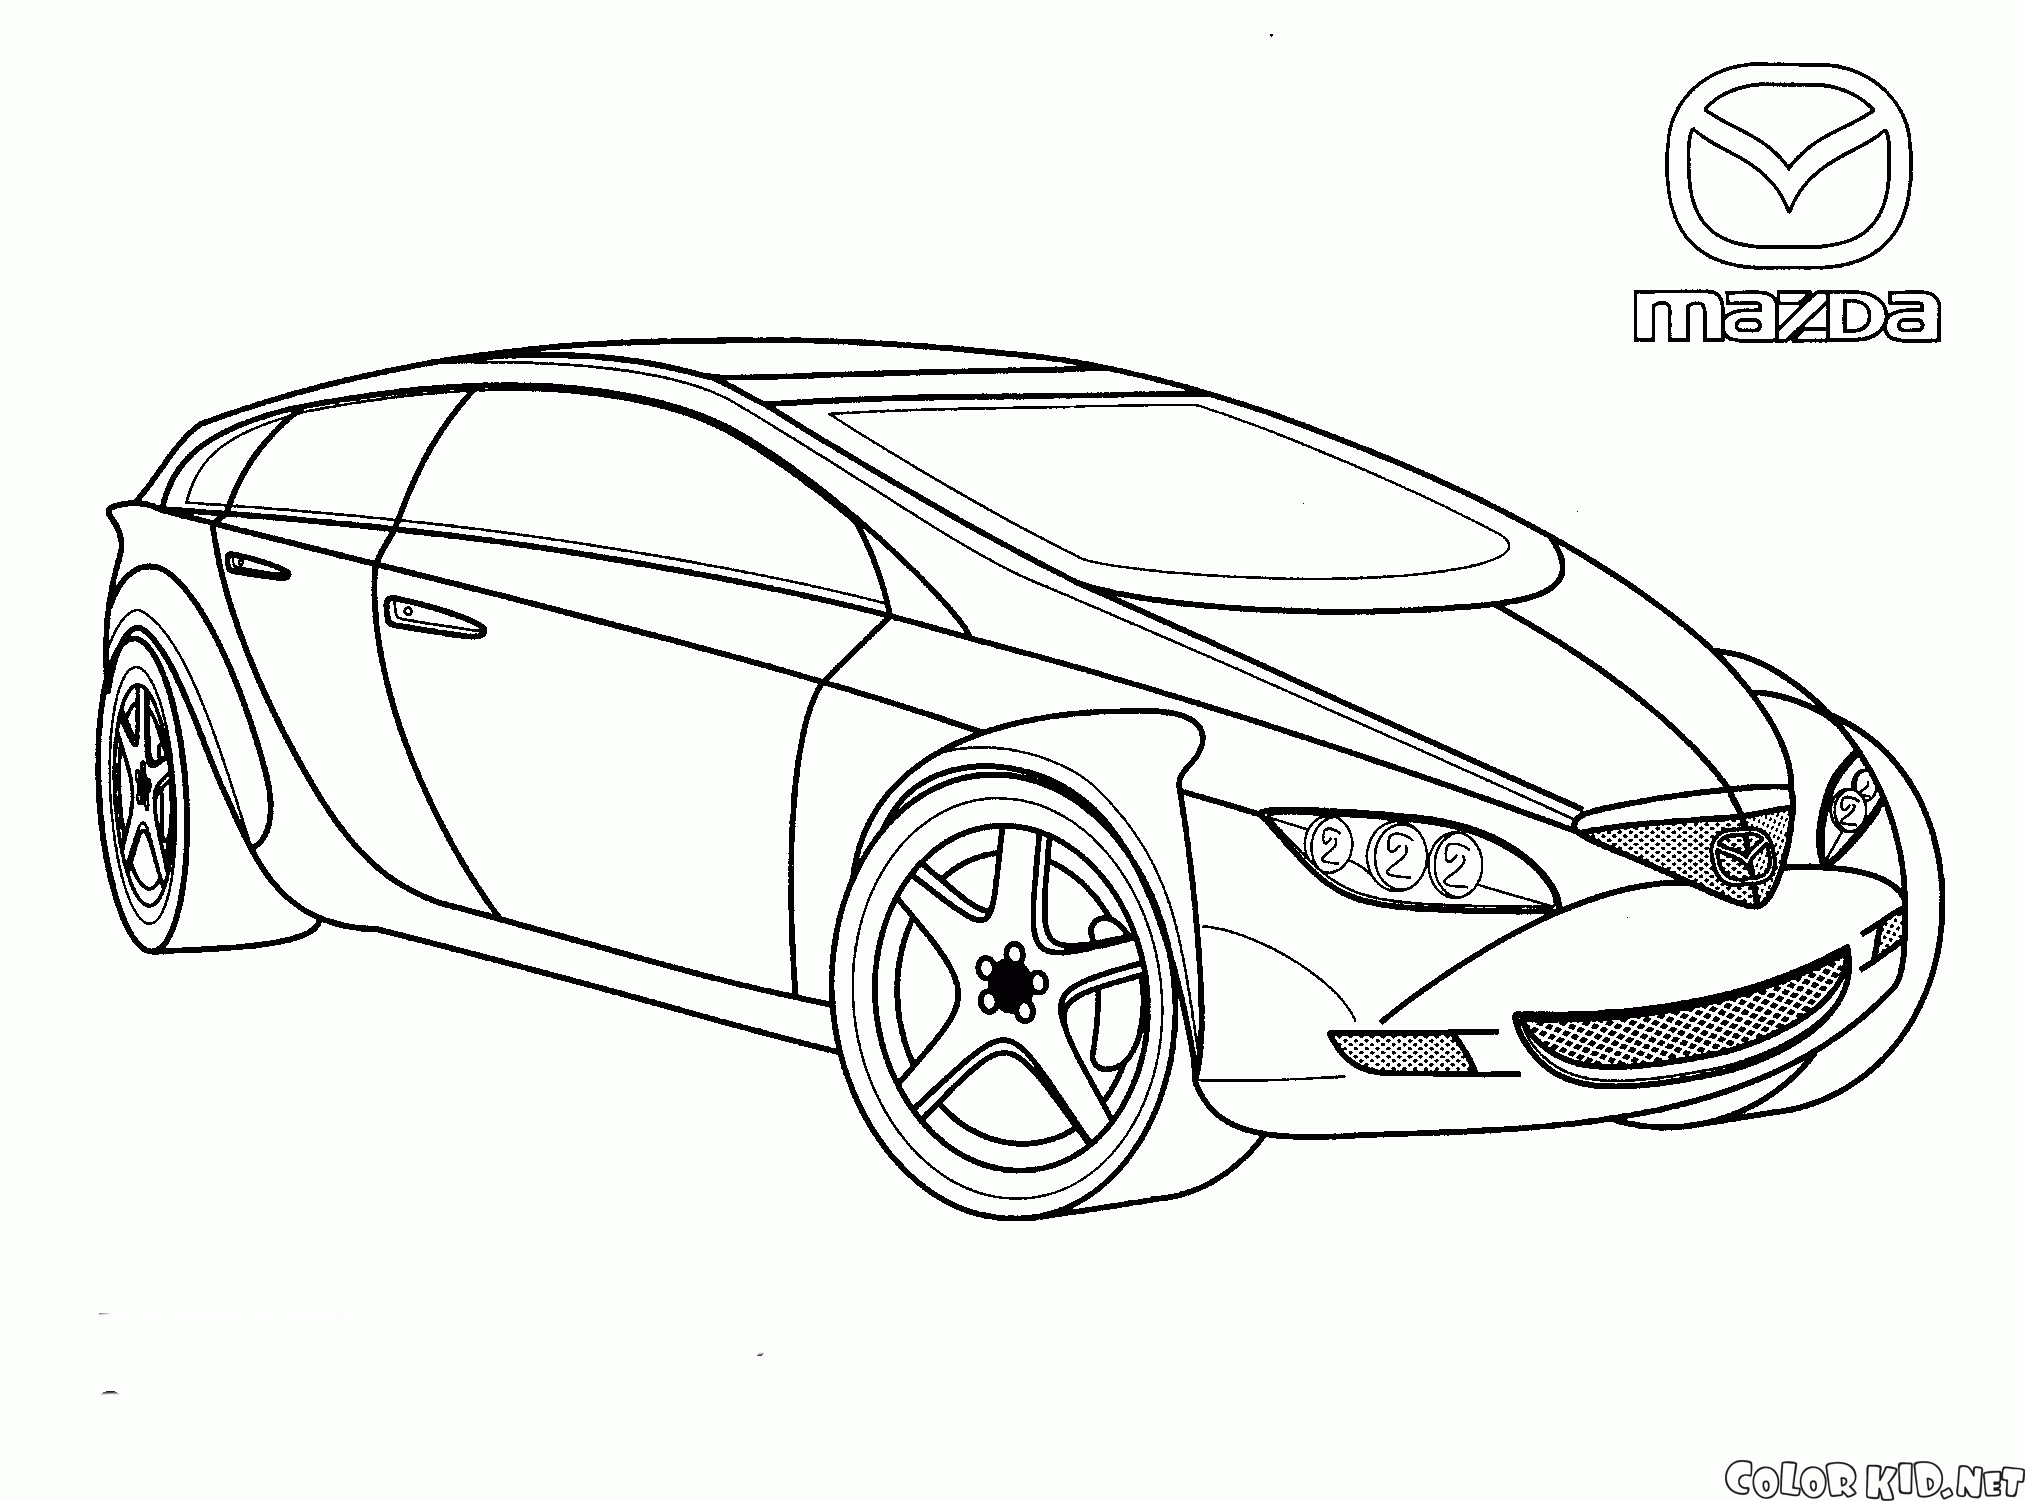 Mazda (Giappone)